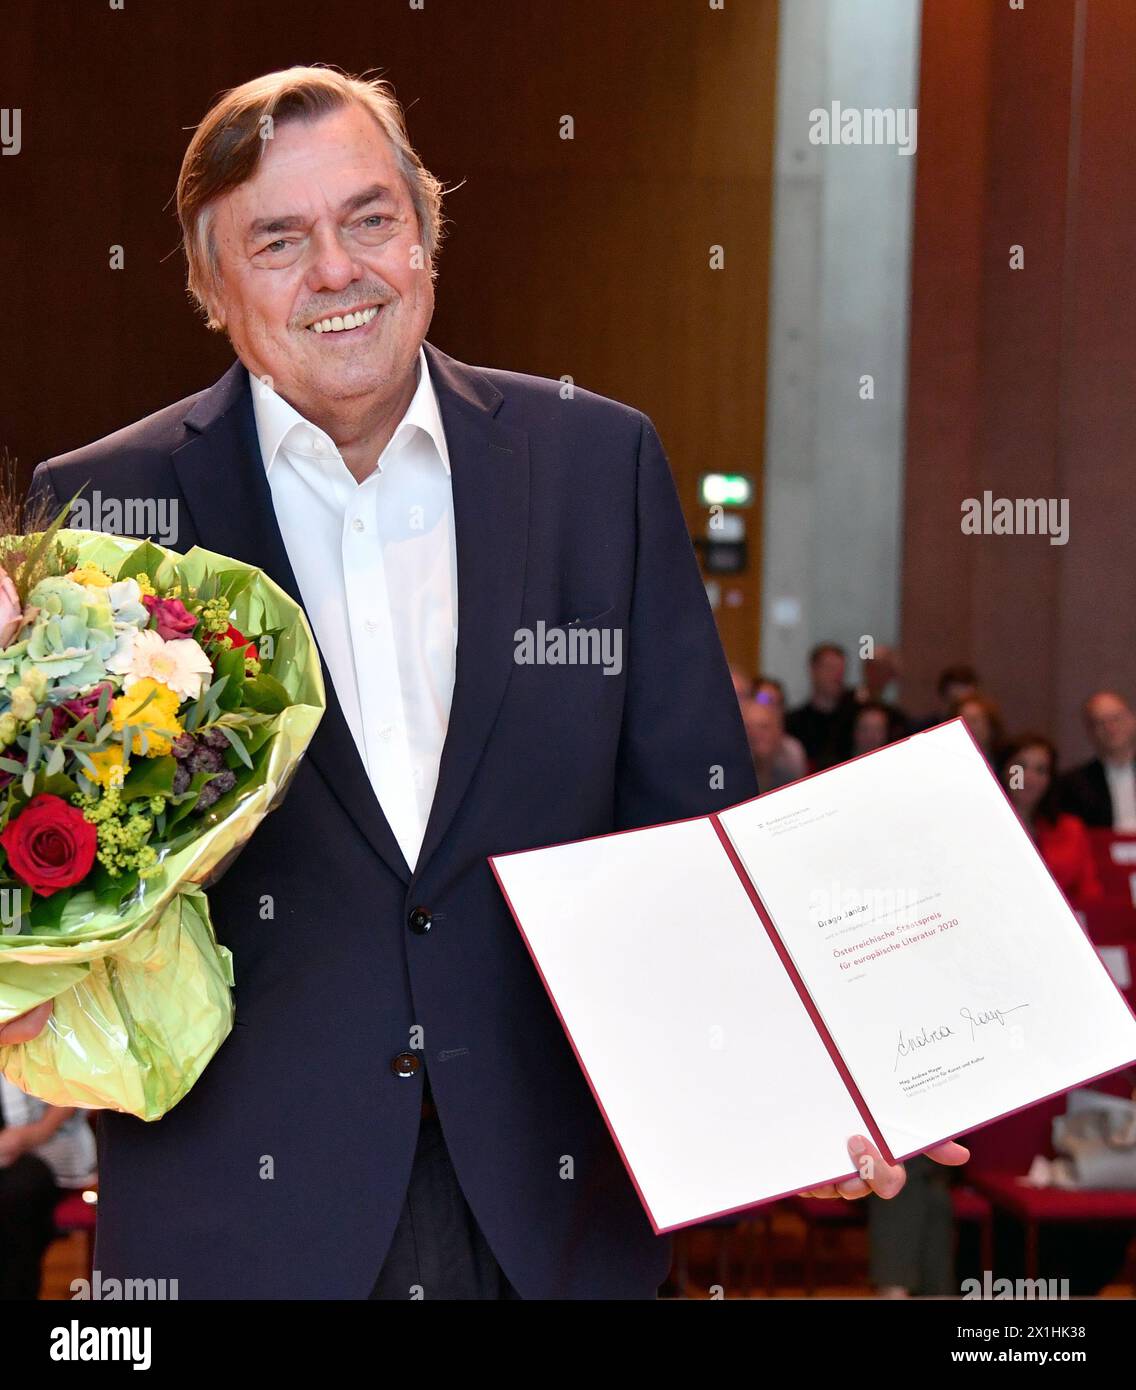 L'autore sloveno Drago Jancar (C) posa dopo aver ricevuto il "Premio di Stato austriaco per la letteratura europea" il 3 agosto 2020 a Salisburgo. - 20200803 PD1627 - Rechteinfo: Diritti gestiti (RM) Foto Stock